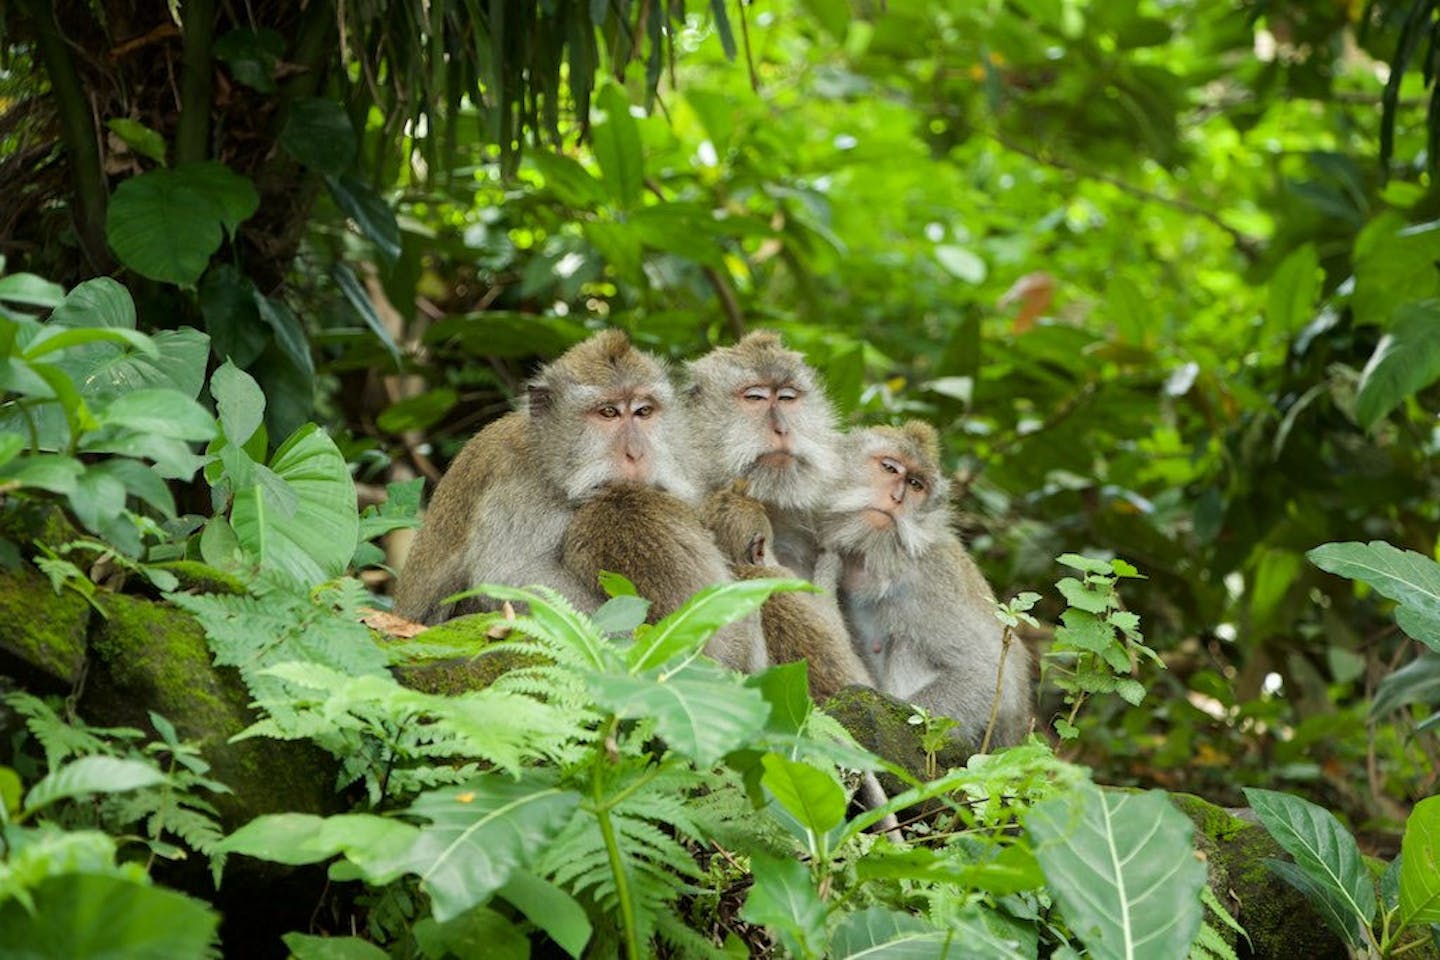 Monkeys from the monkey forest in bali